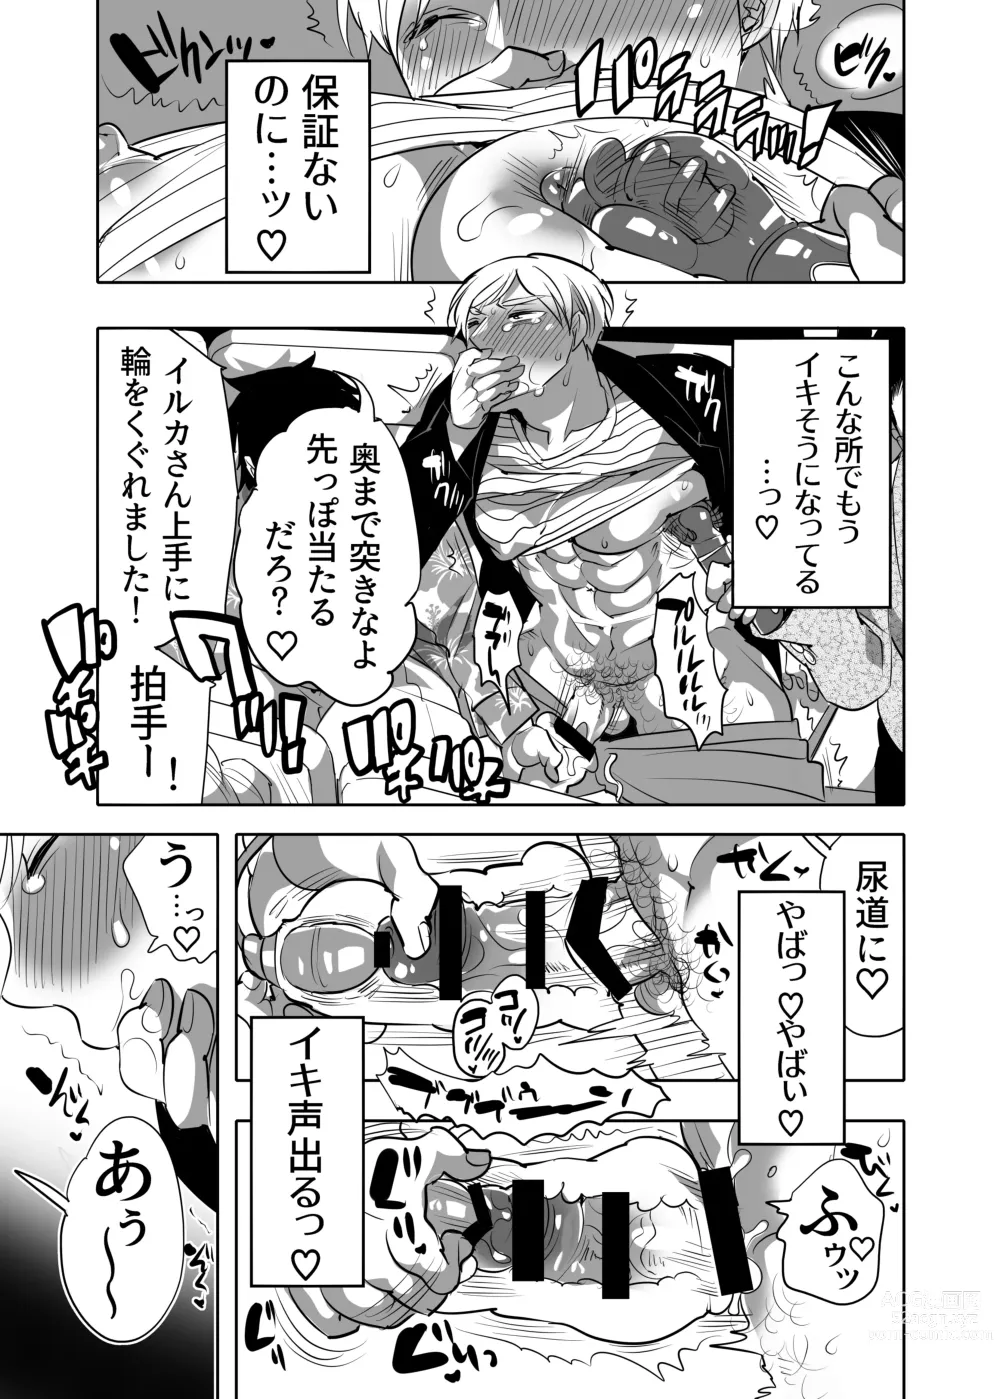 Page 11 of manga Abuso OK Prisionero Niño